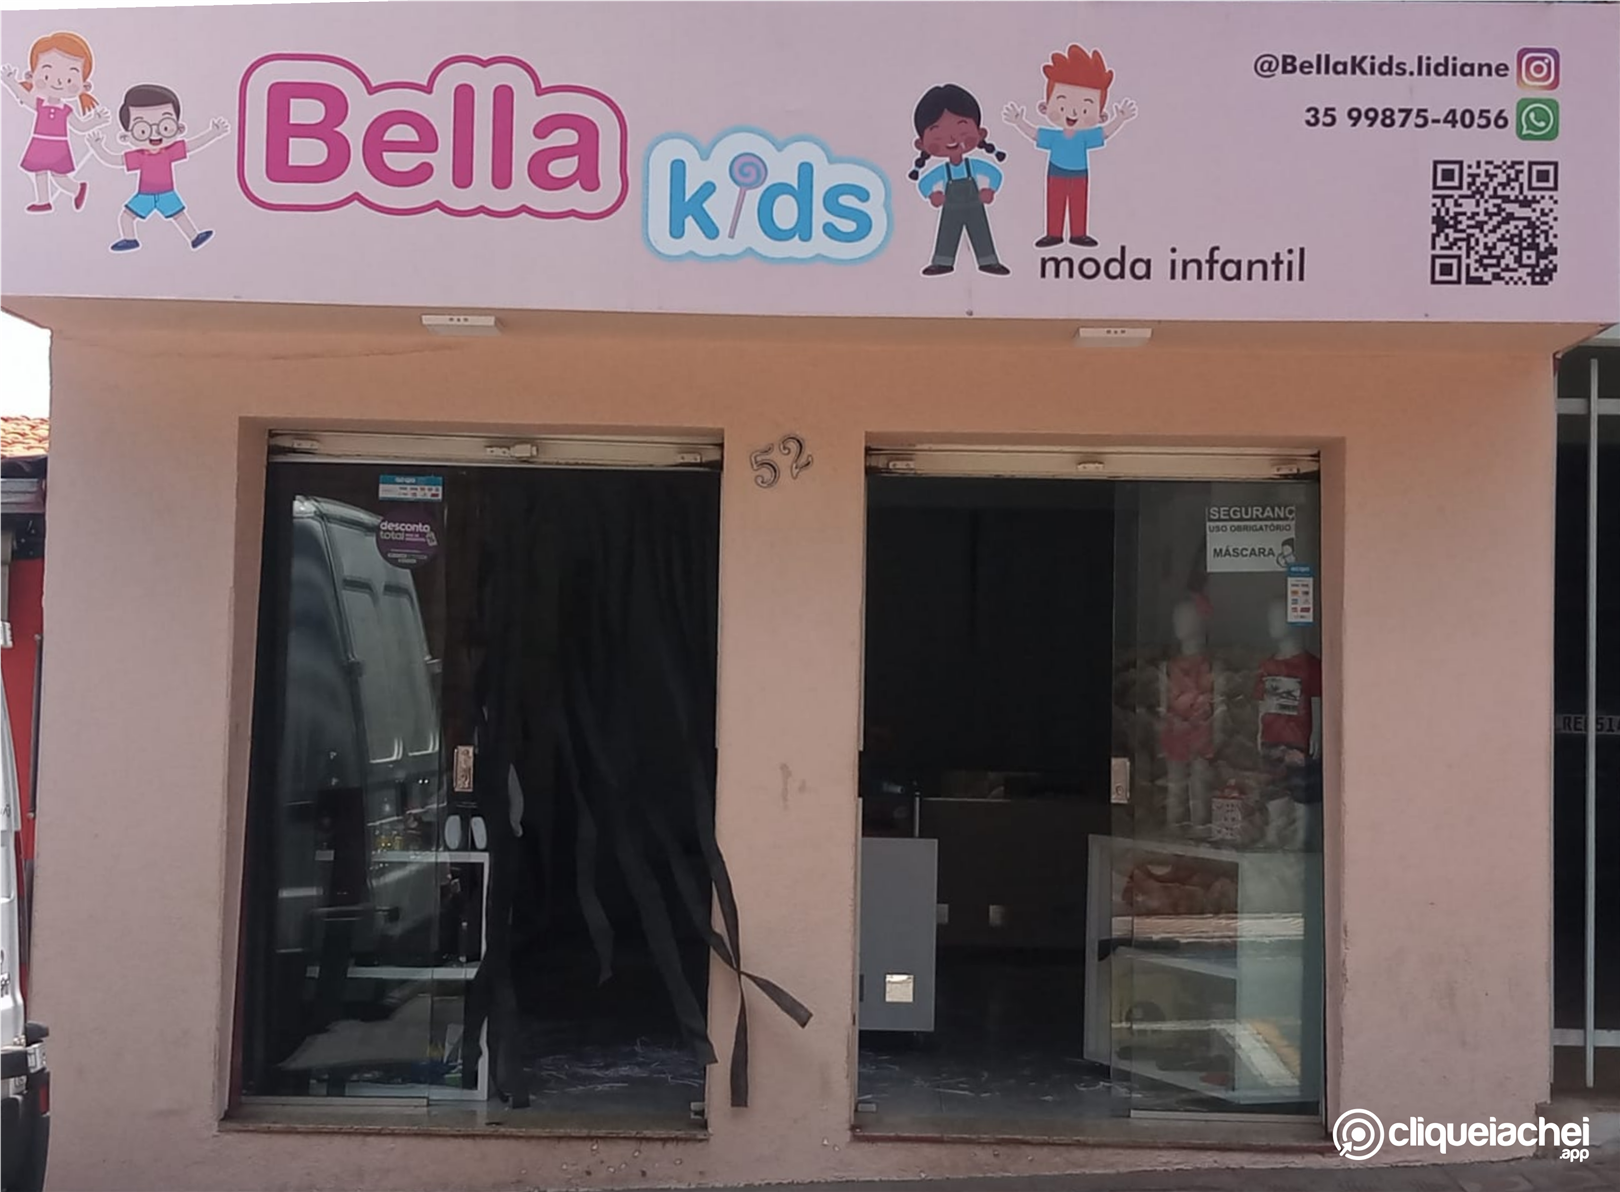 Moda Infantil em Passos, MG é Bella Kids.